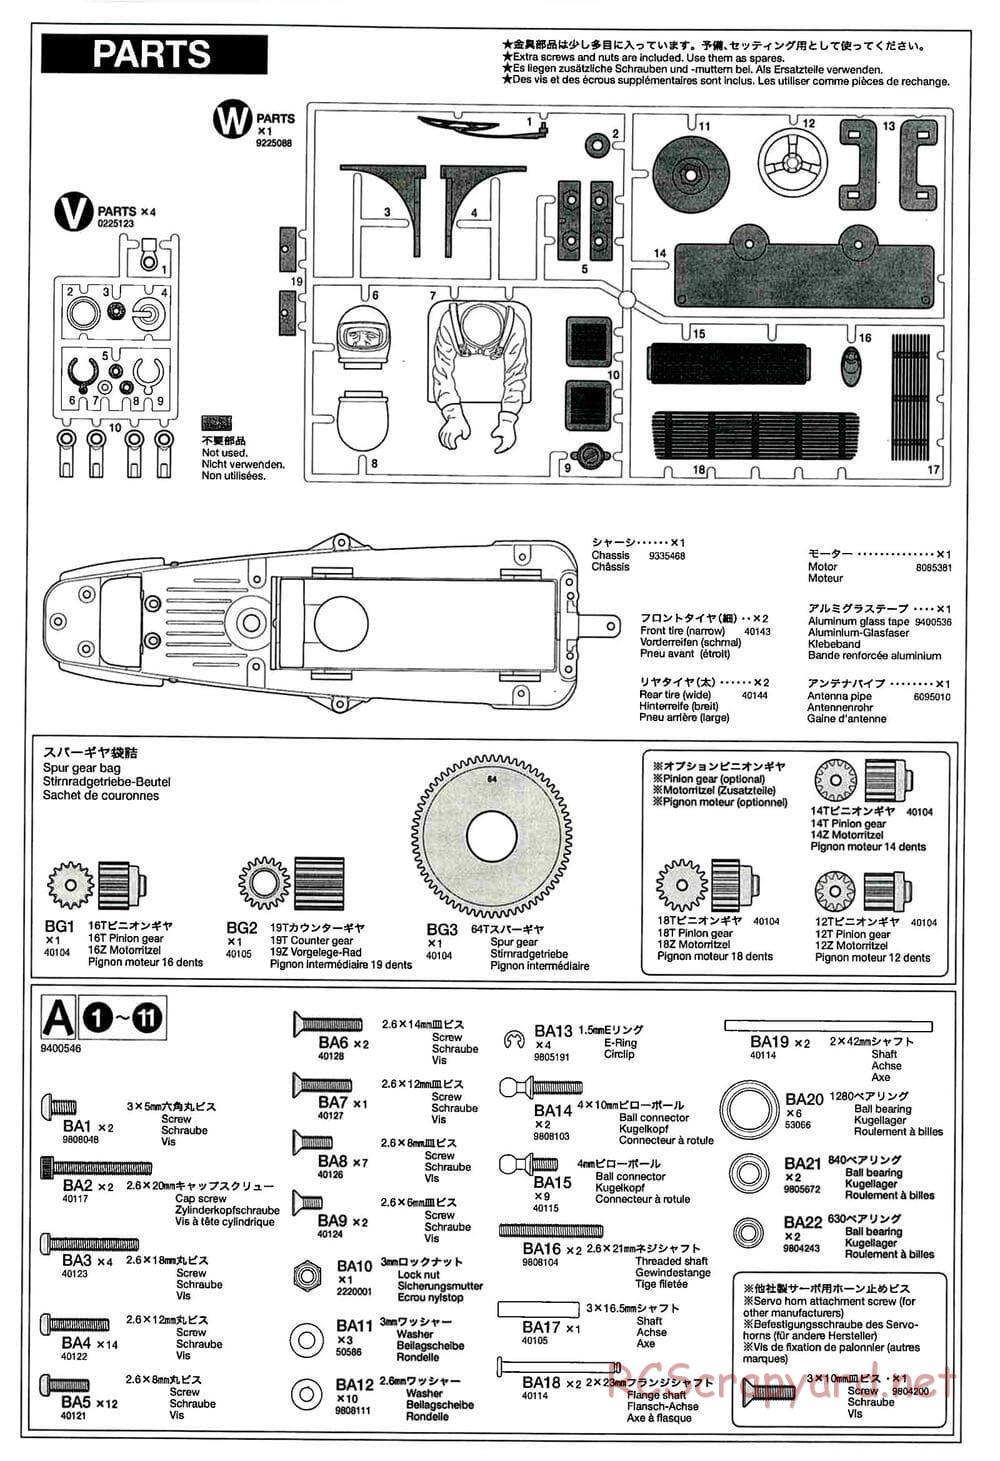 Tamiya - GT-01 Chassis - Manual - Page 21